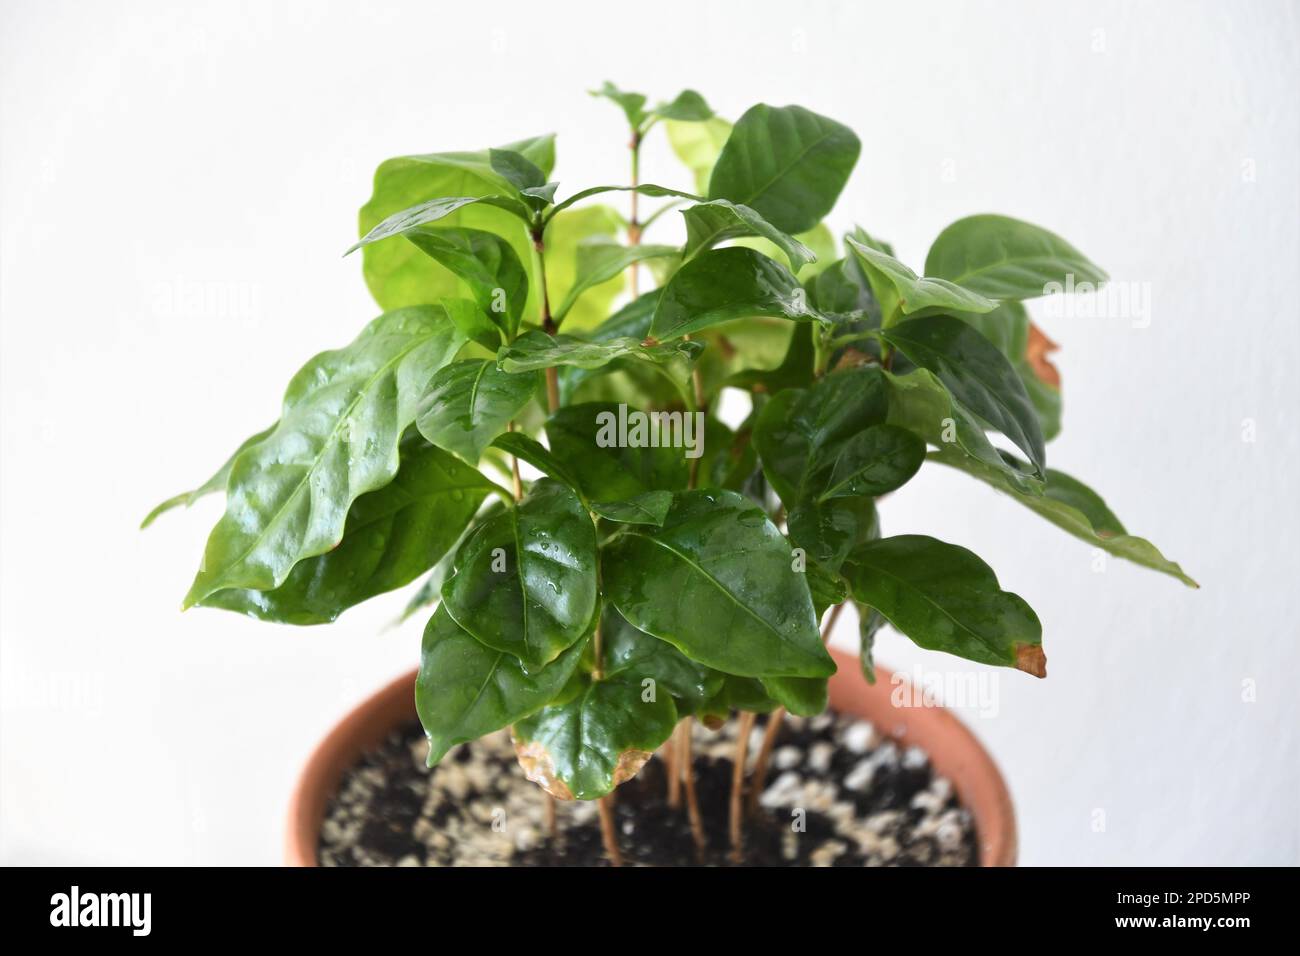 Kaffeepflanze, Coffea arabica, in einem Terrakotta-Topf, isoliert auf weißem Hintergrund. Hauspflanze mit grünen Blättern. Querformat. Stockfoto